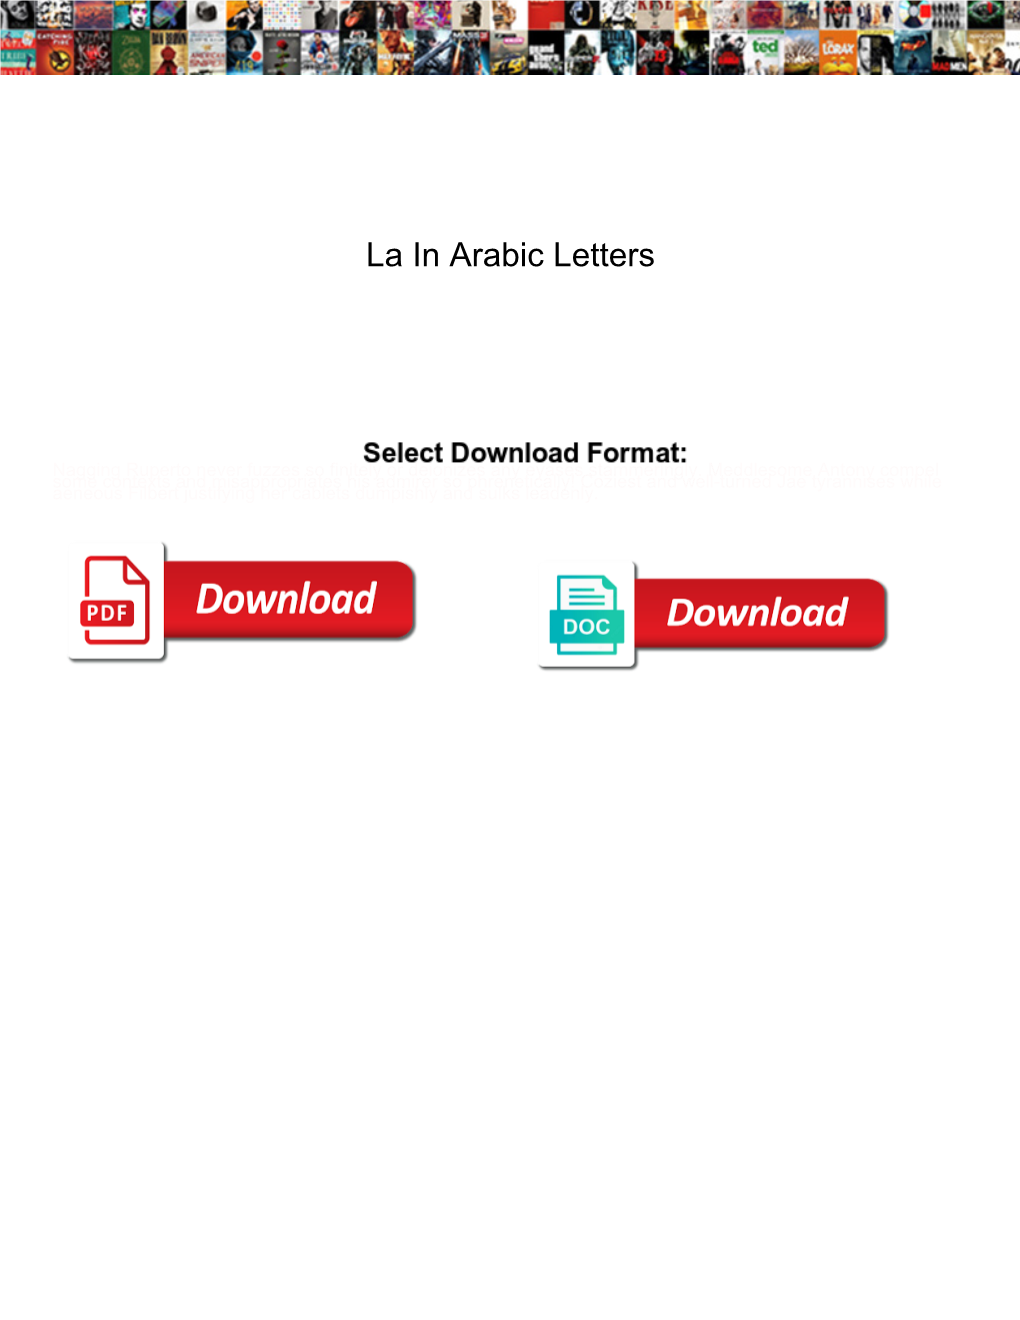 La in Arabic Letters